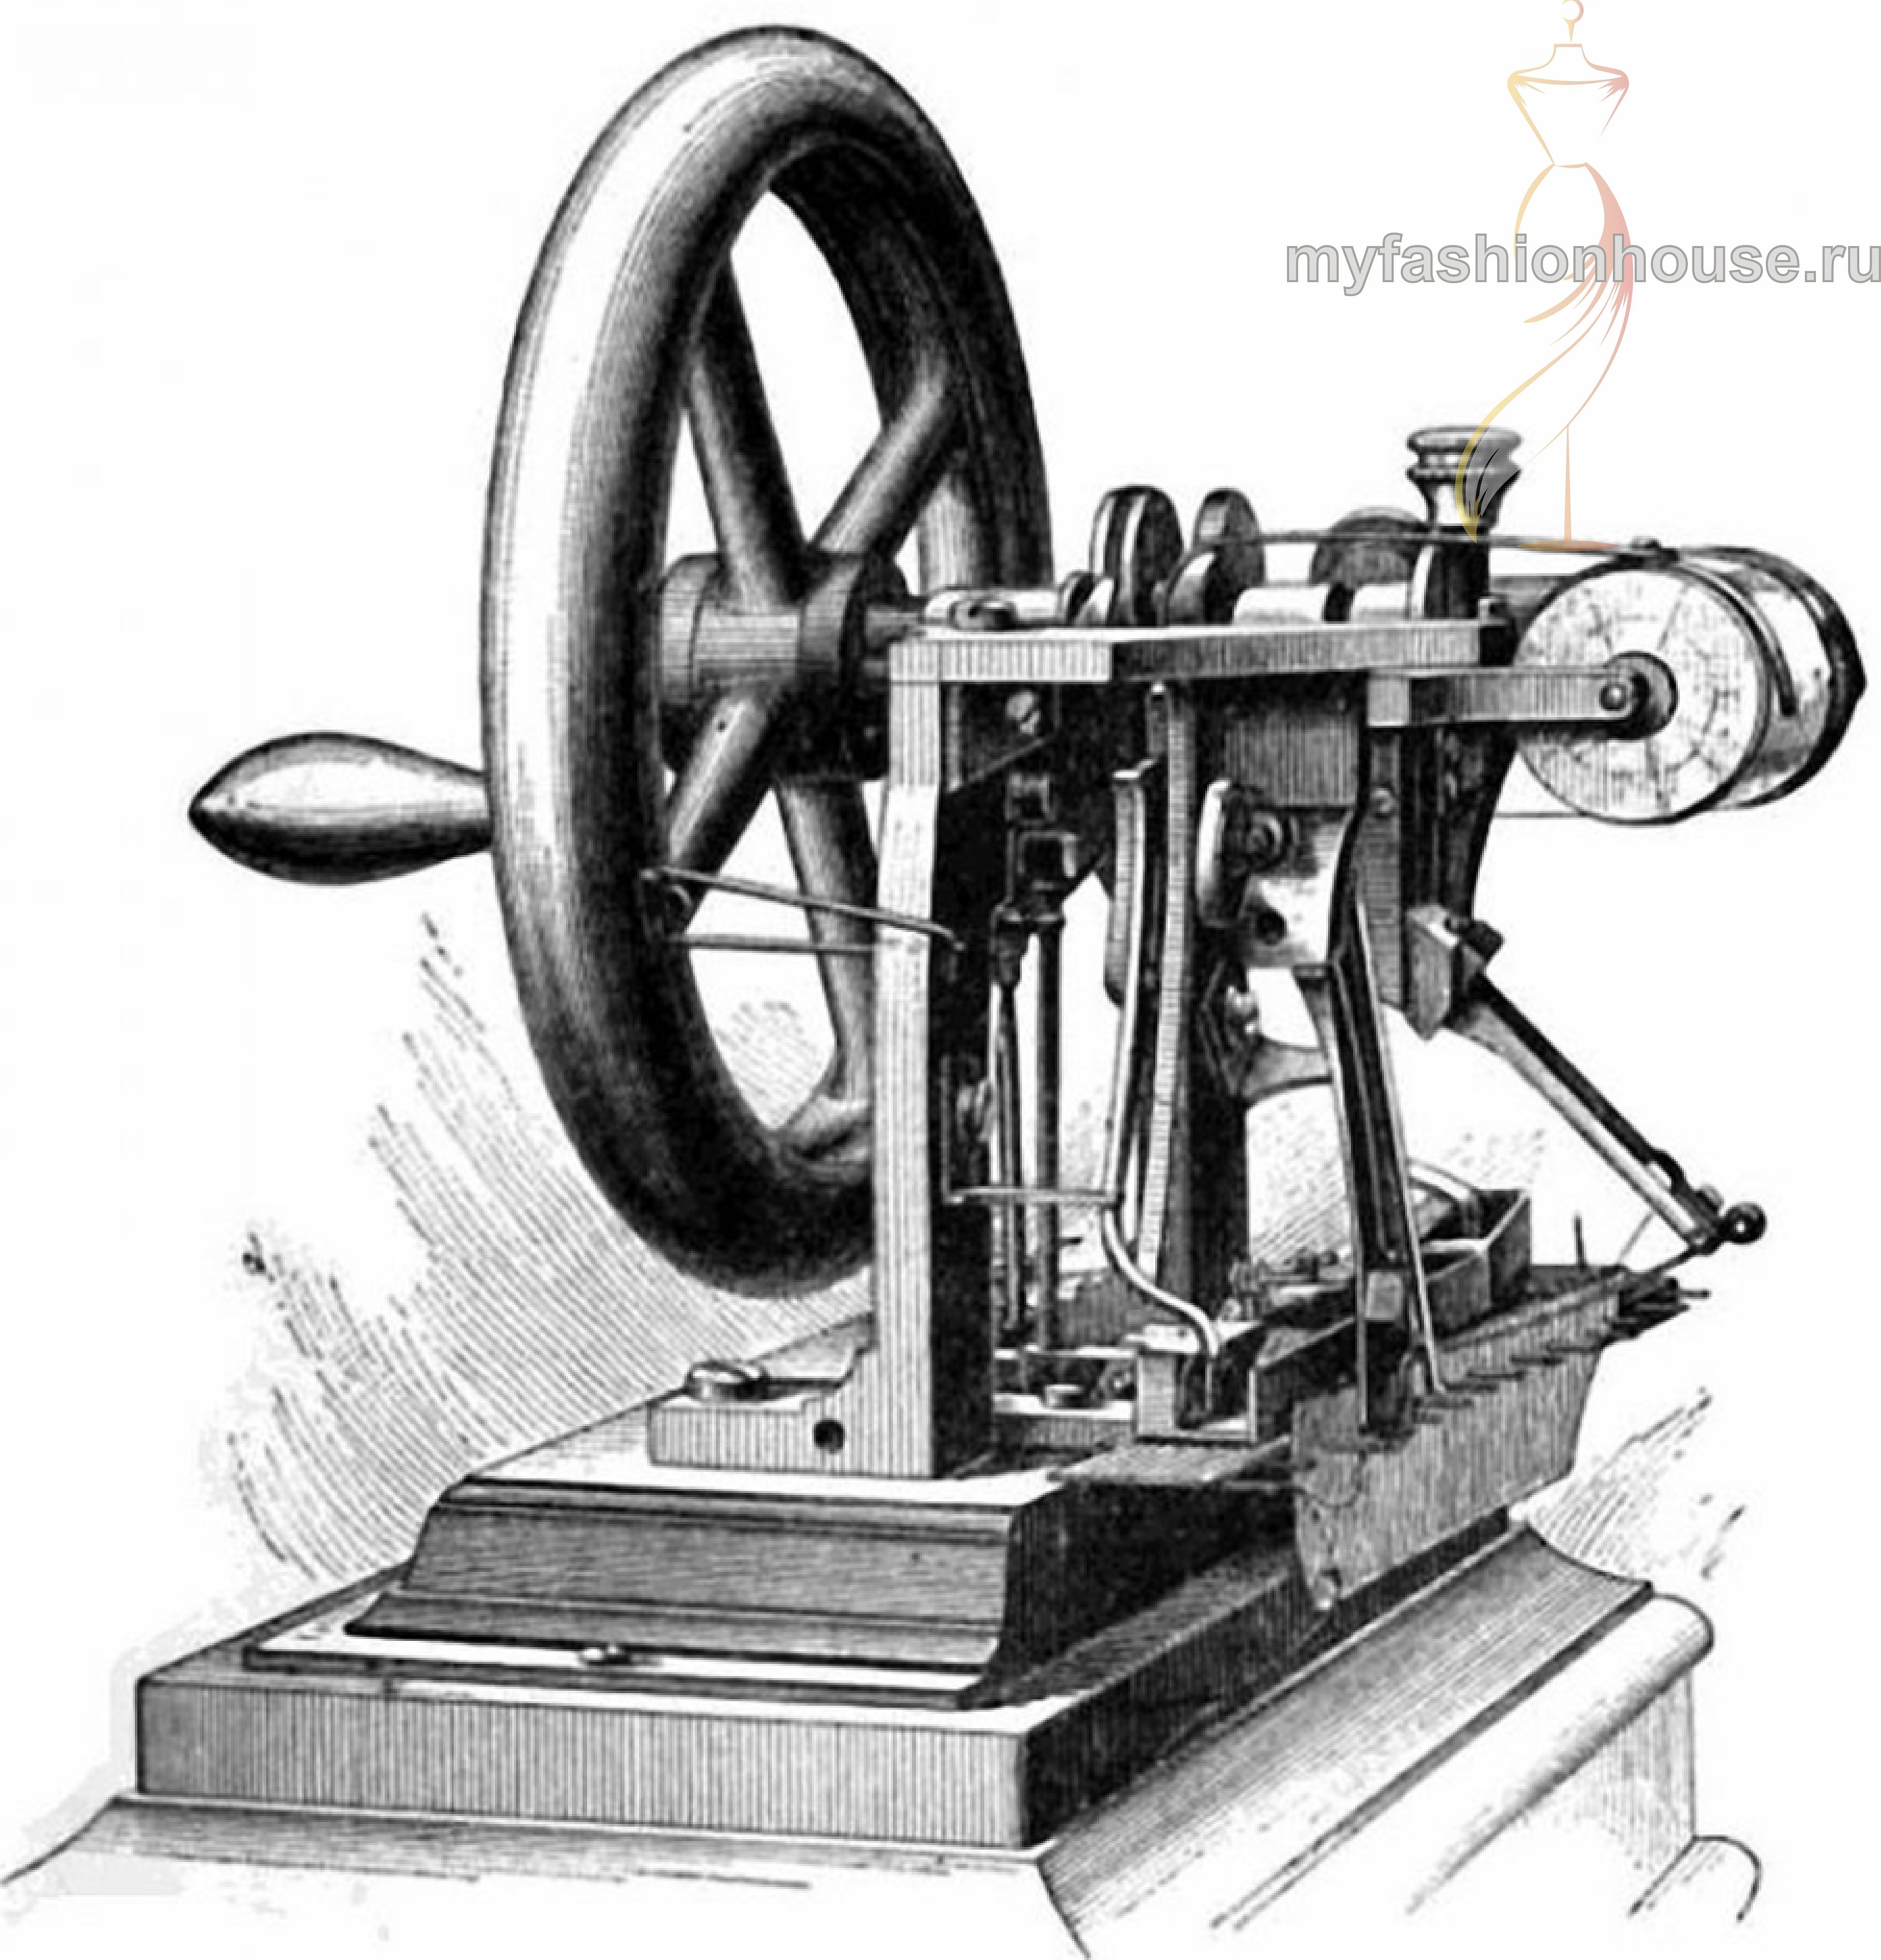 Первая швейная машинка элиаса хоу